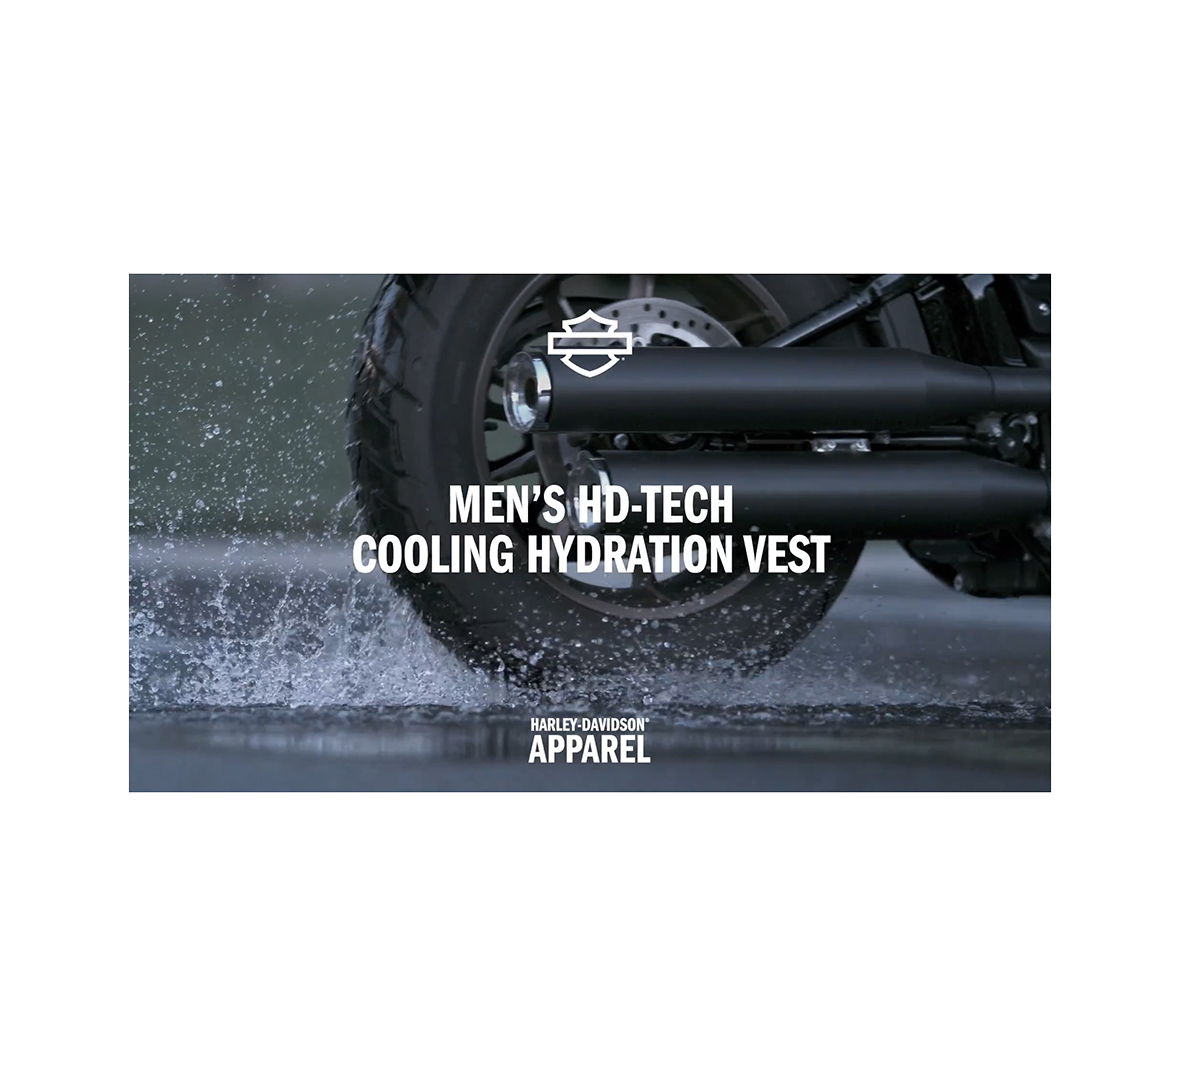 HD-Tech Cooling Hydration Vest | Harley-Davidson USA